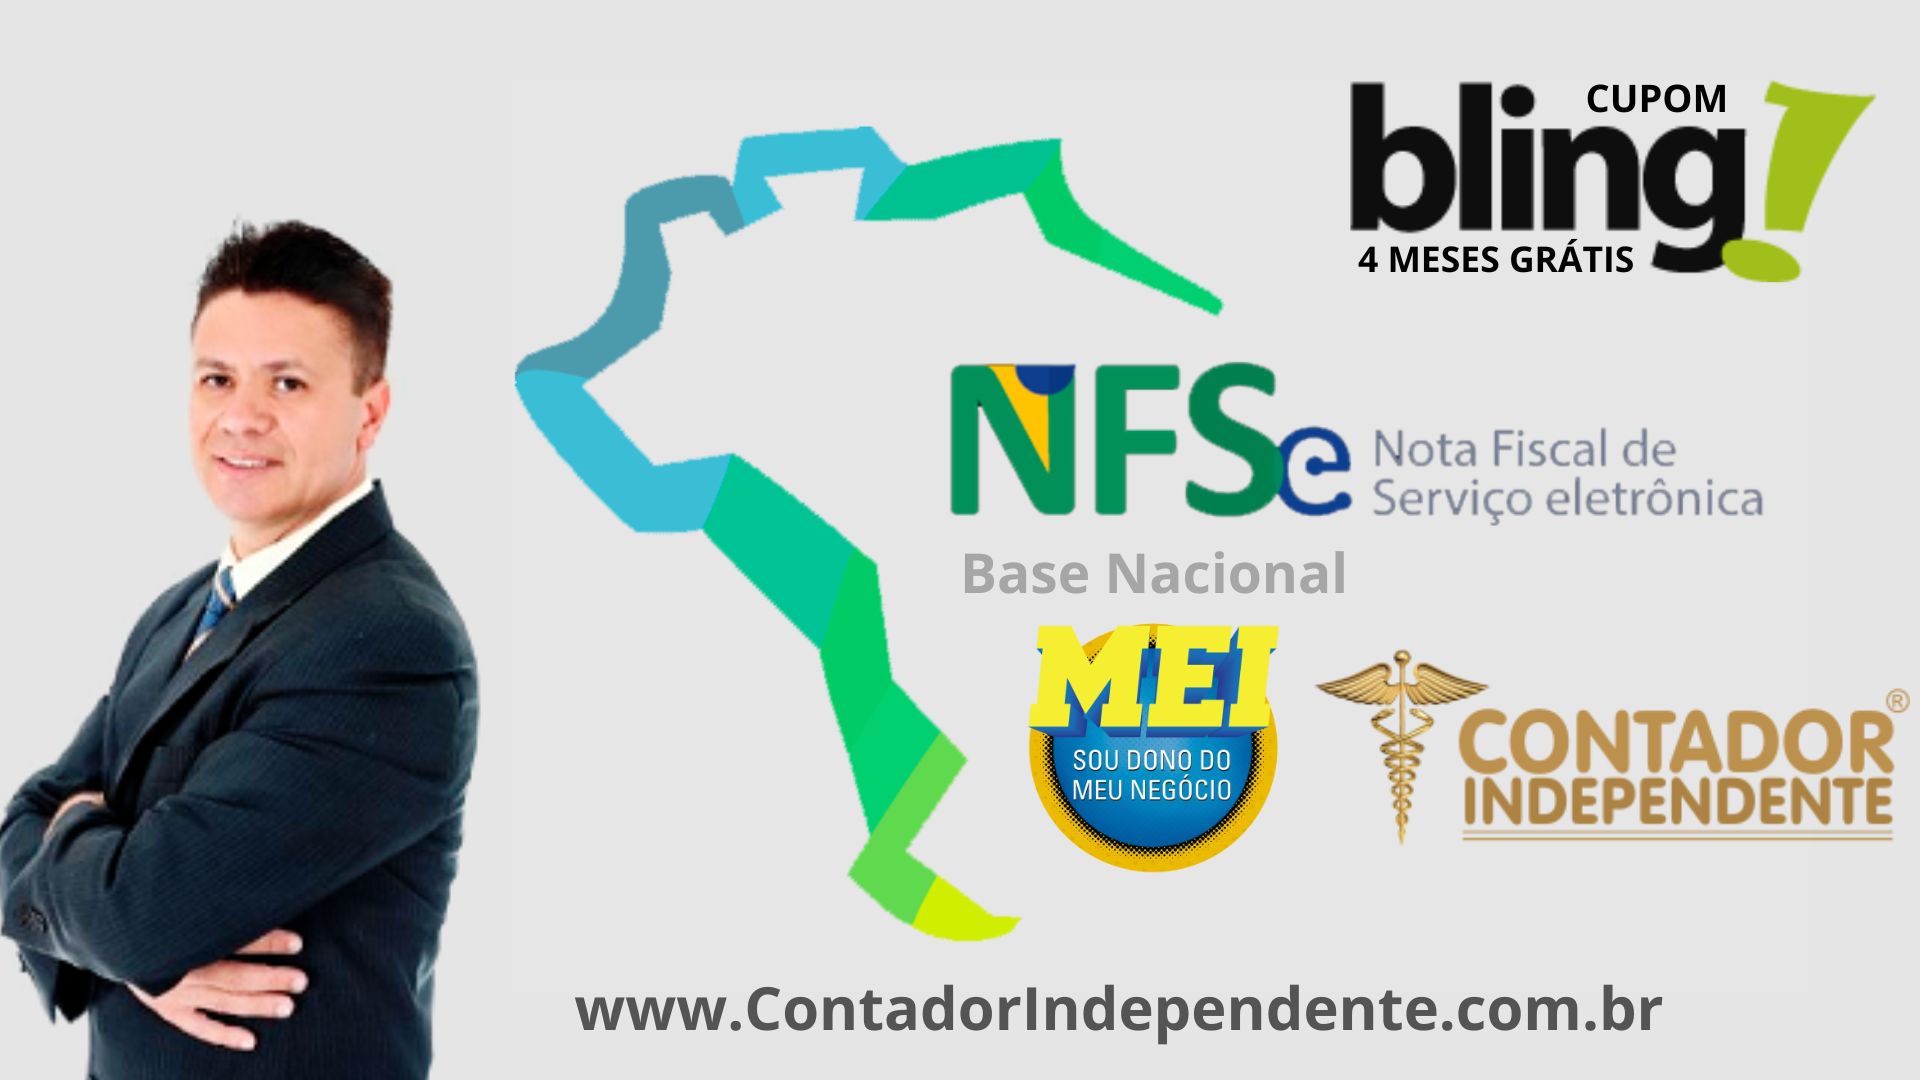 NFS-e Nacional – Microempreendedores Individuais (MEI) de todo o país já  podem emitir NFS-E no padrão nacional – Inventti